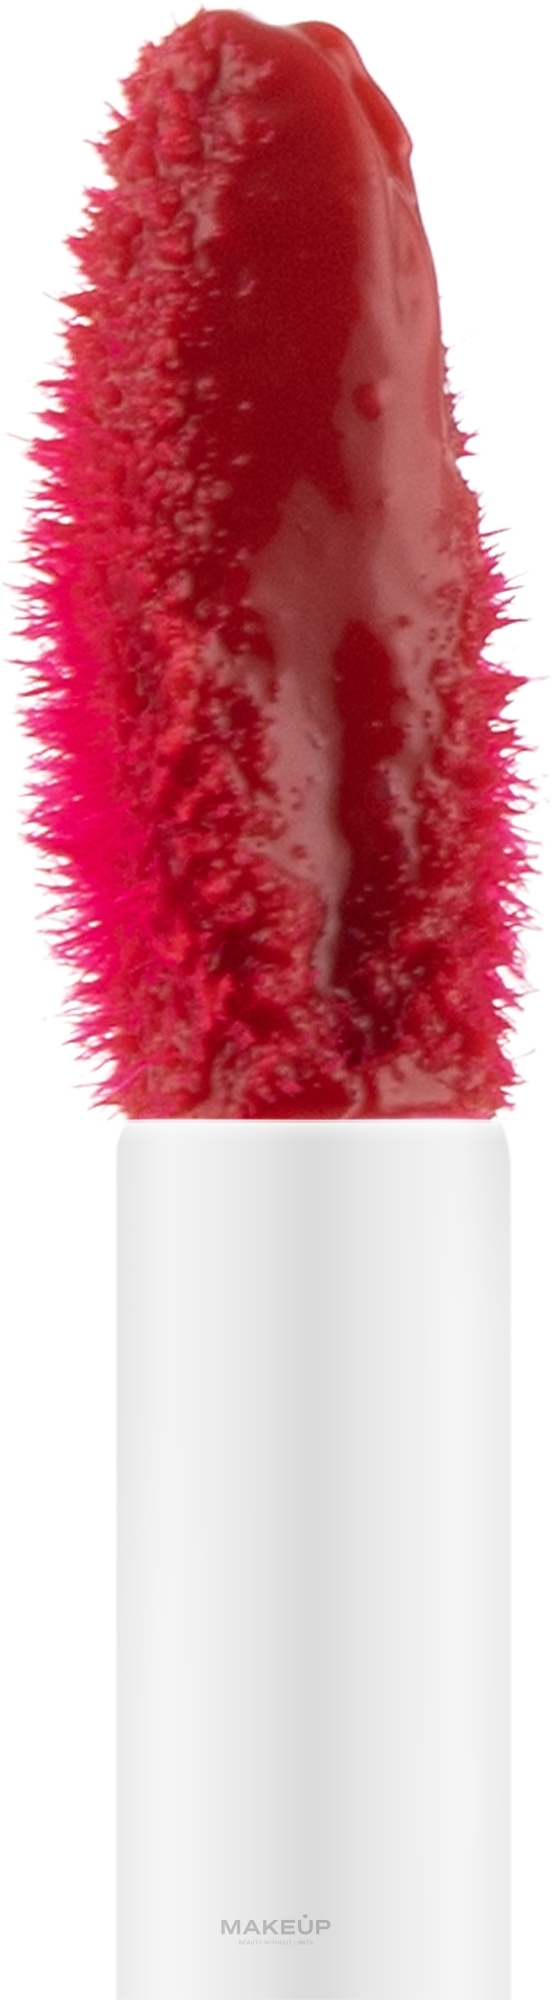 Flüssiger Lippenstift - Avon Power Stay 10 Hour Liquid Lip Stain — Bild Kiss and Tell